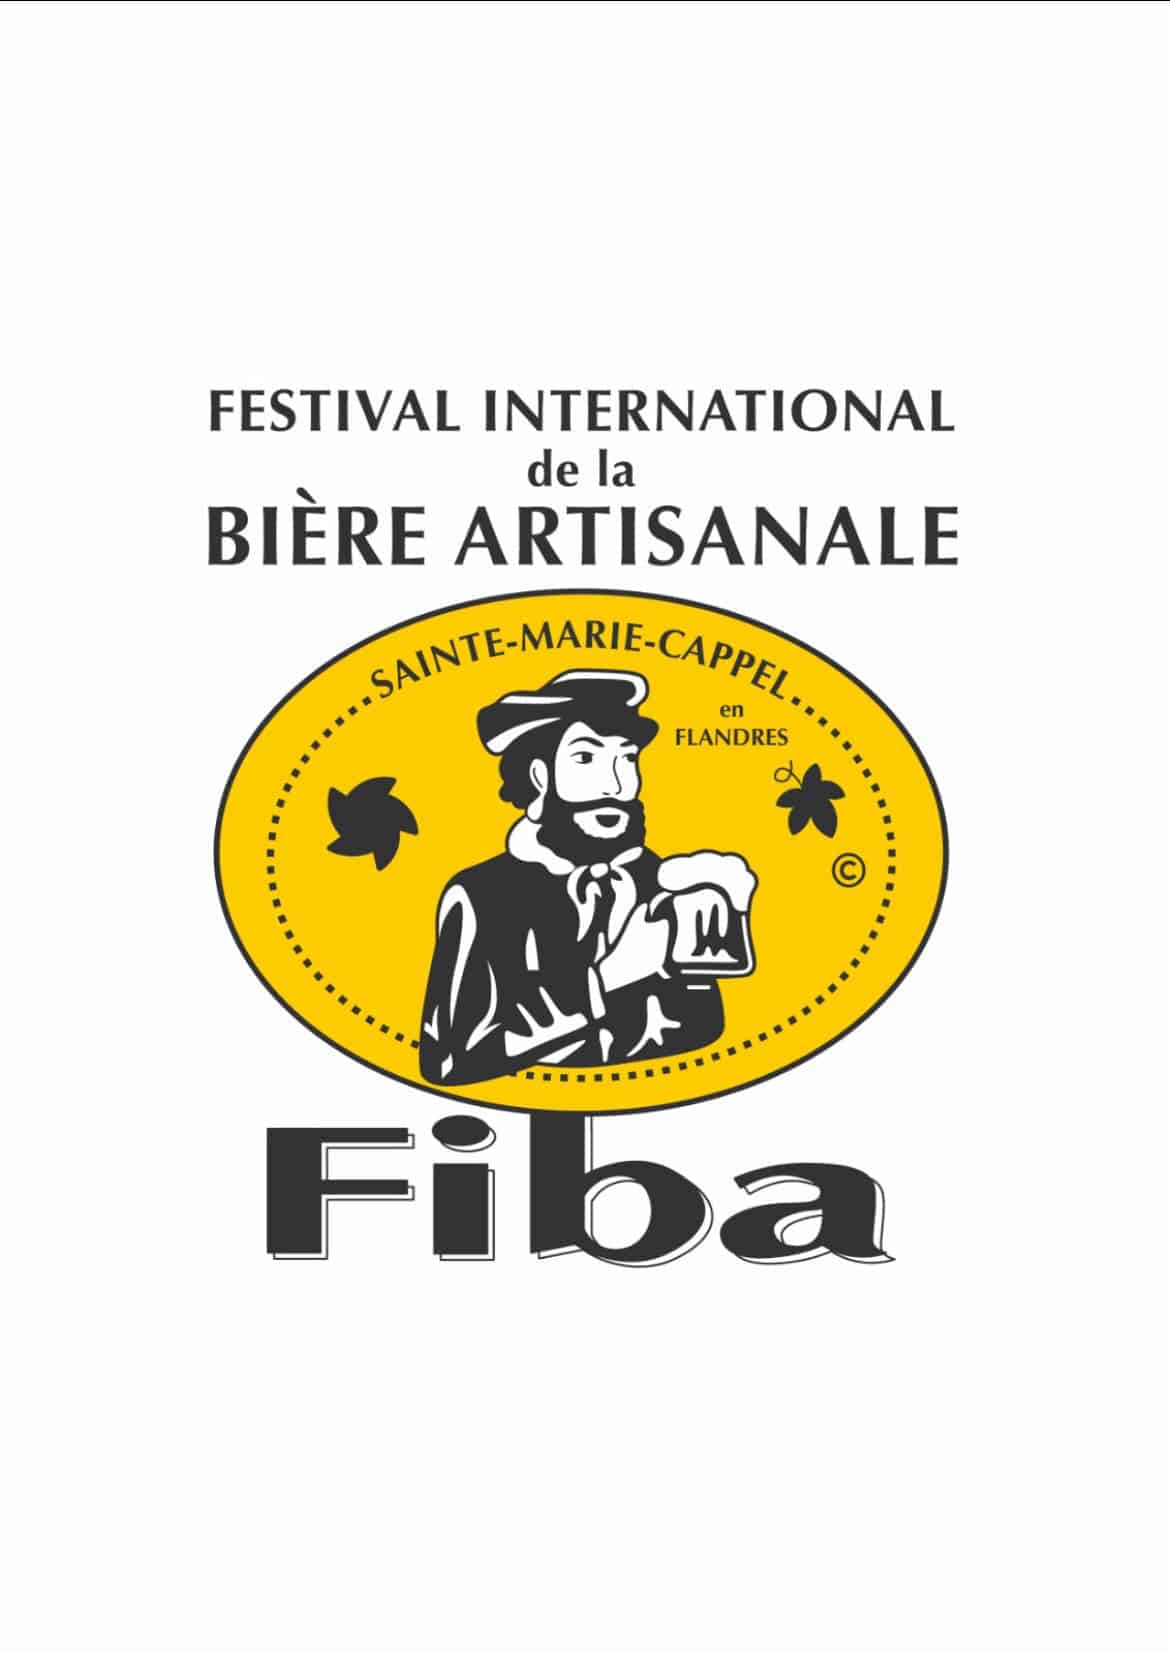 Association du Festival International de la Bière Artisanale